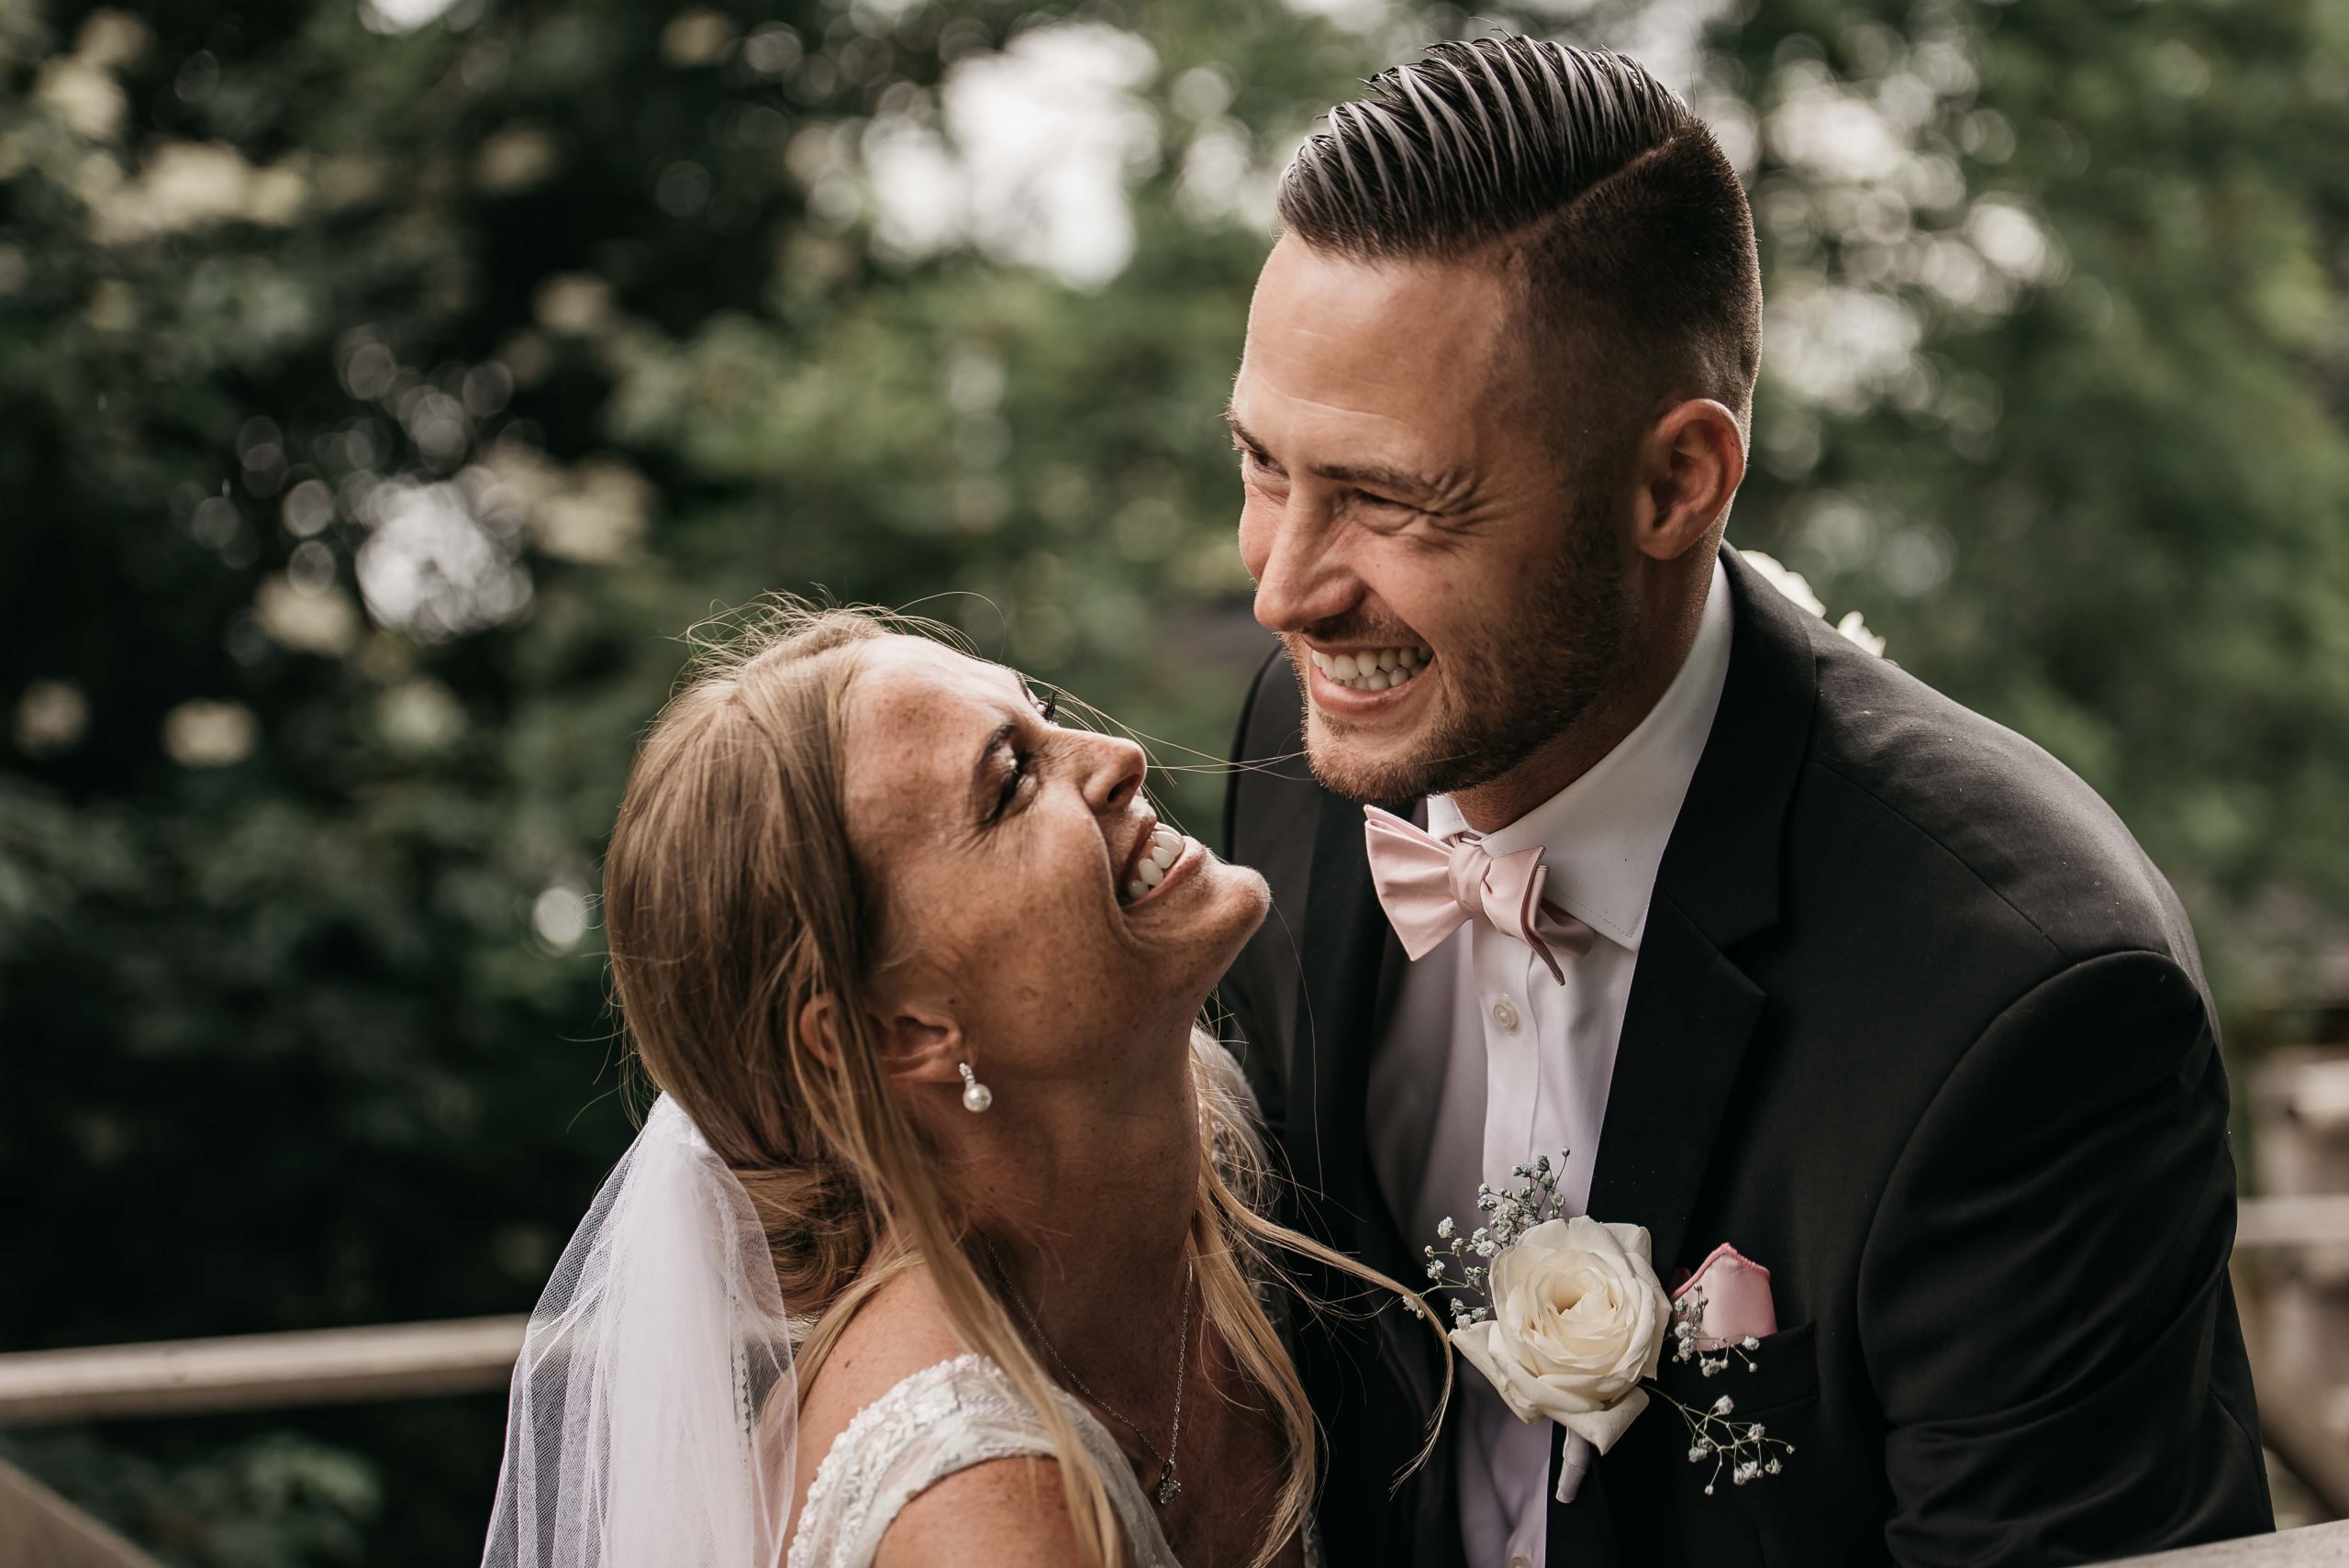 Brudepar griner mens fotograf tager billeder